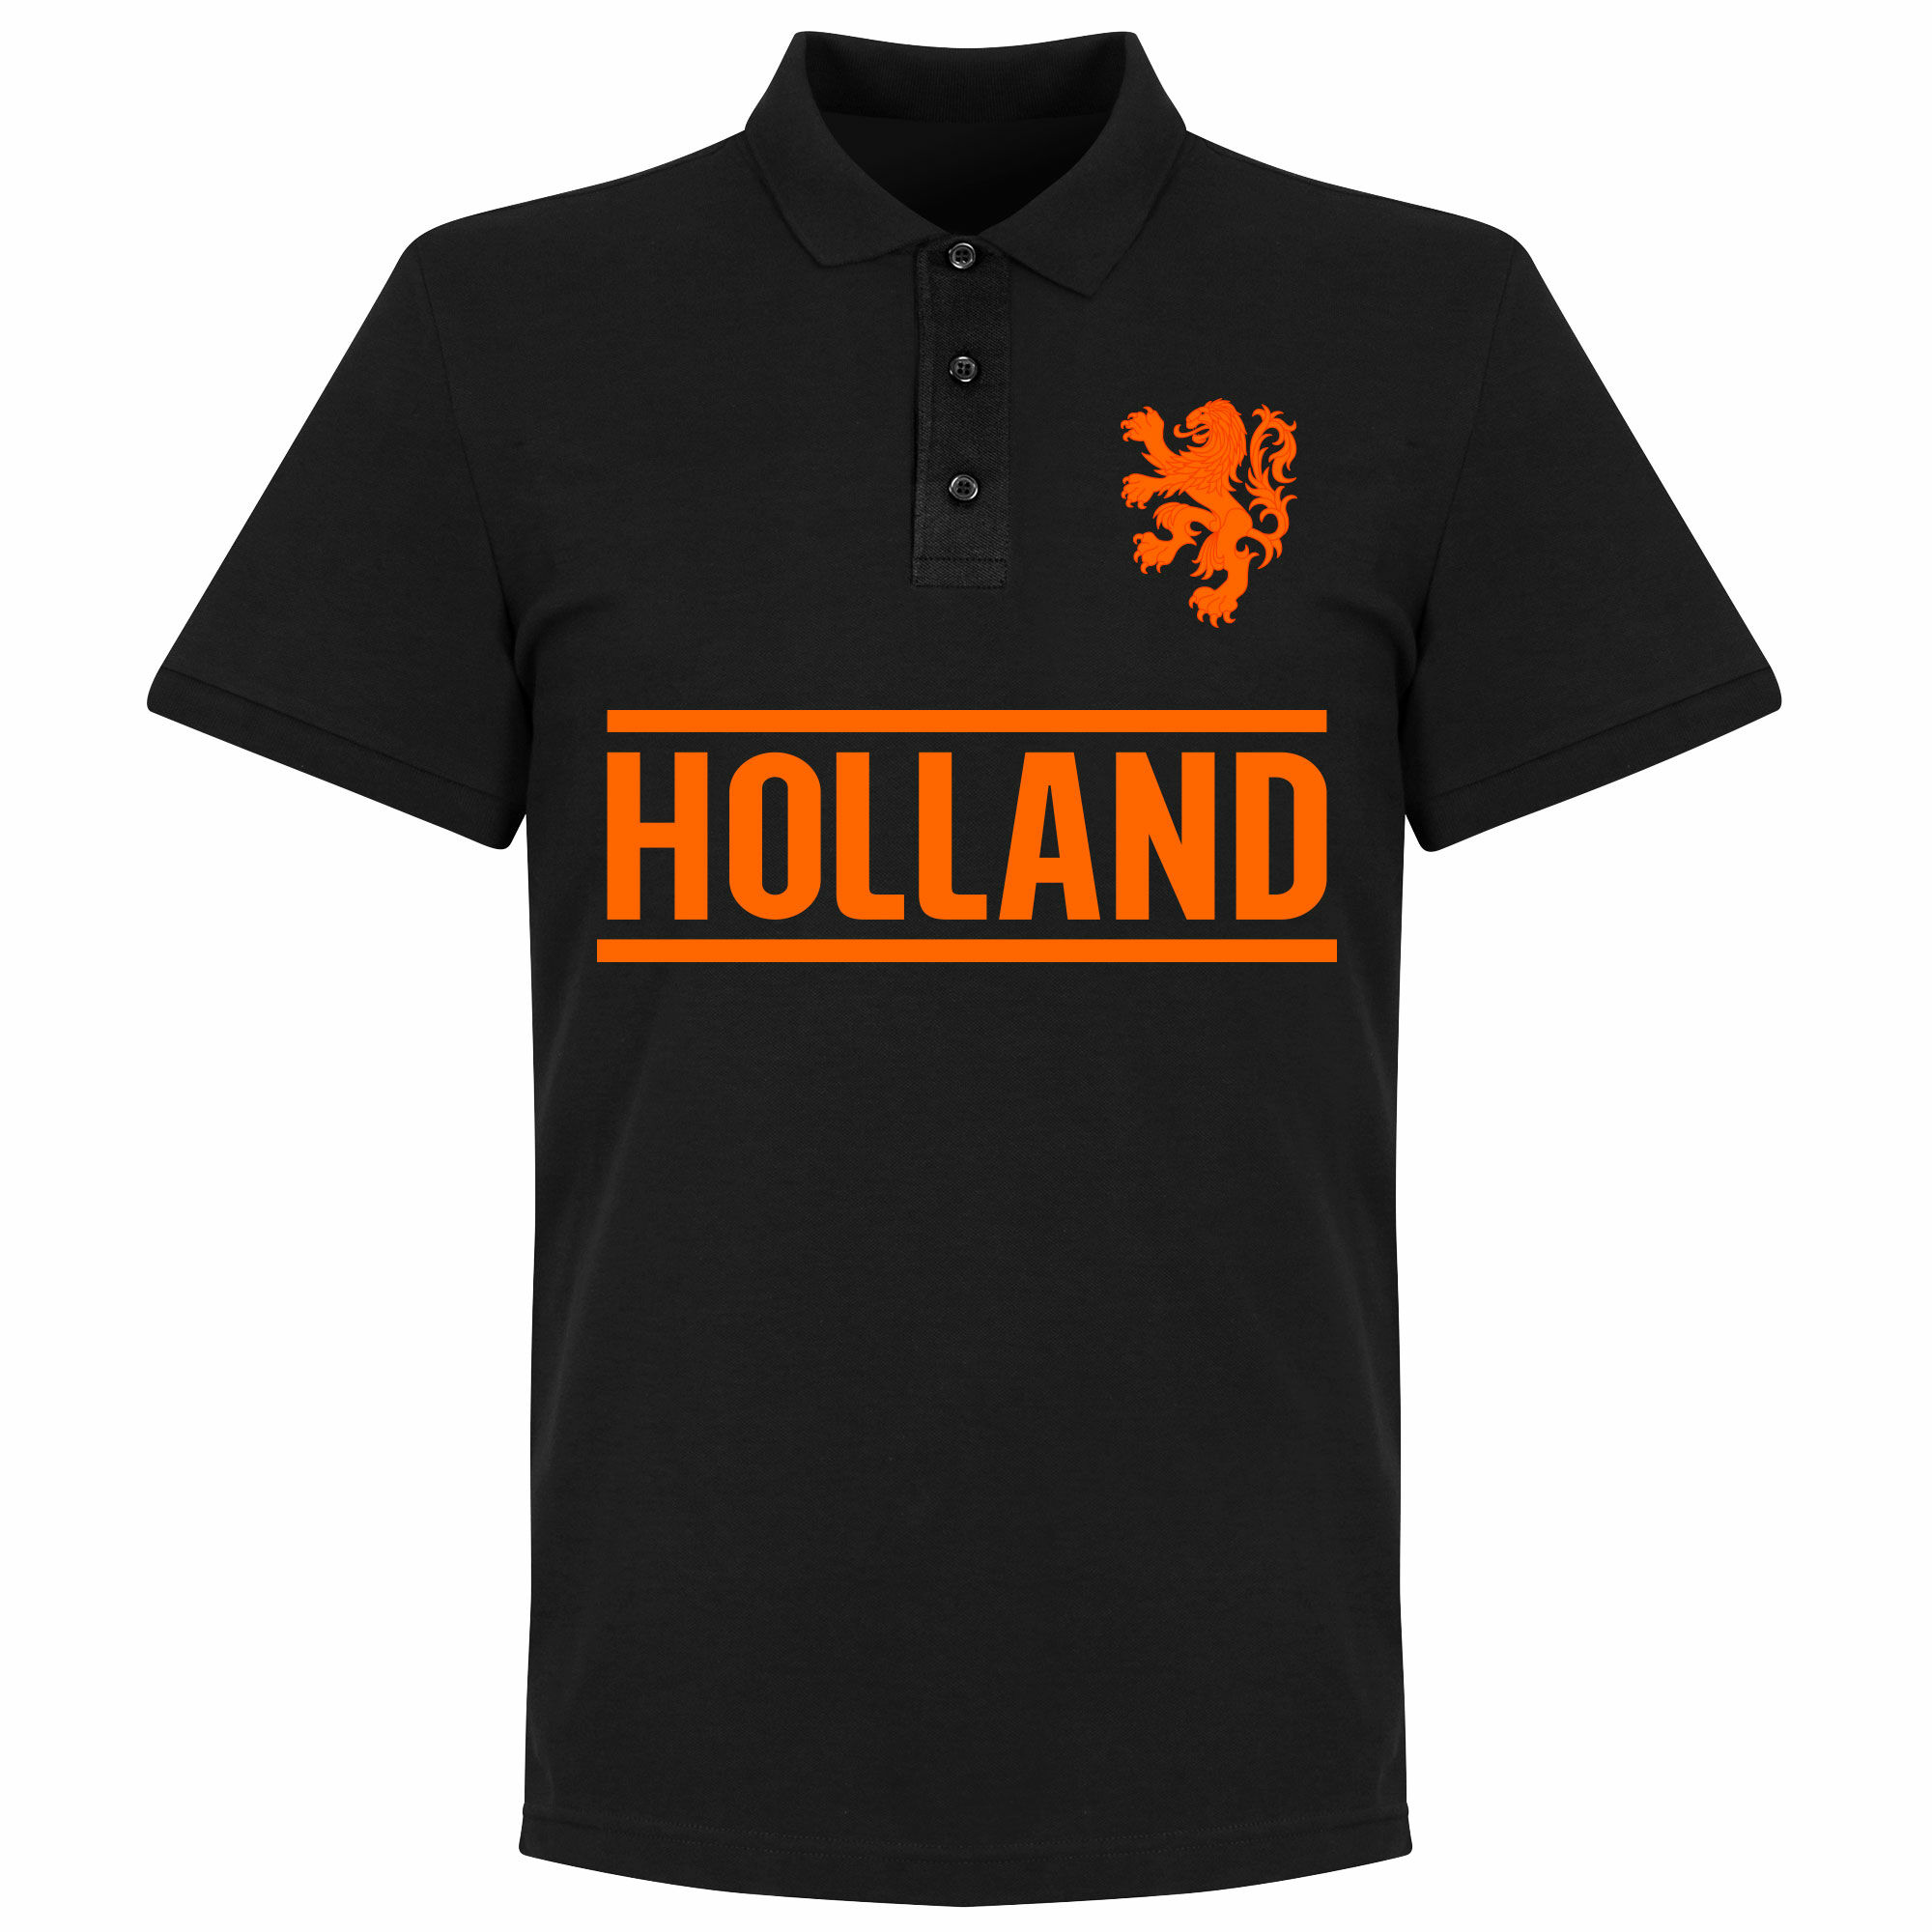 Nizozemí - Tričko s límečkem - černé